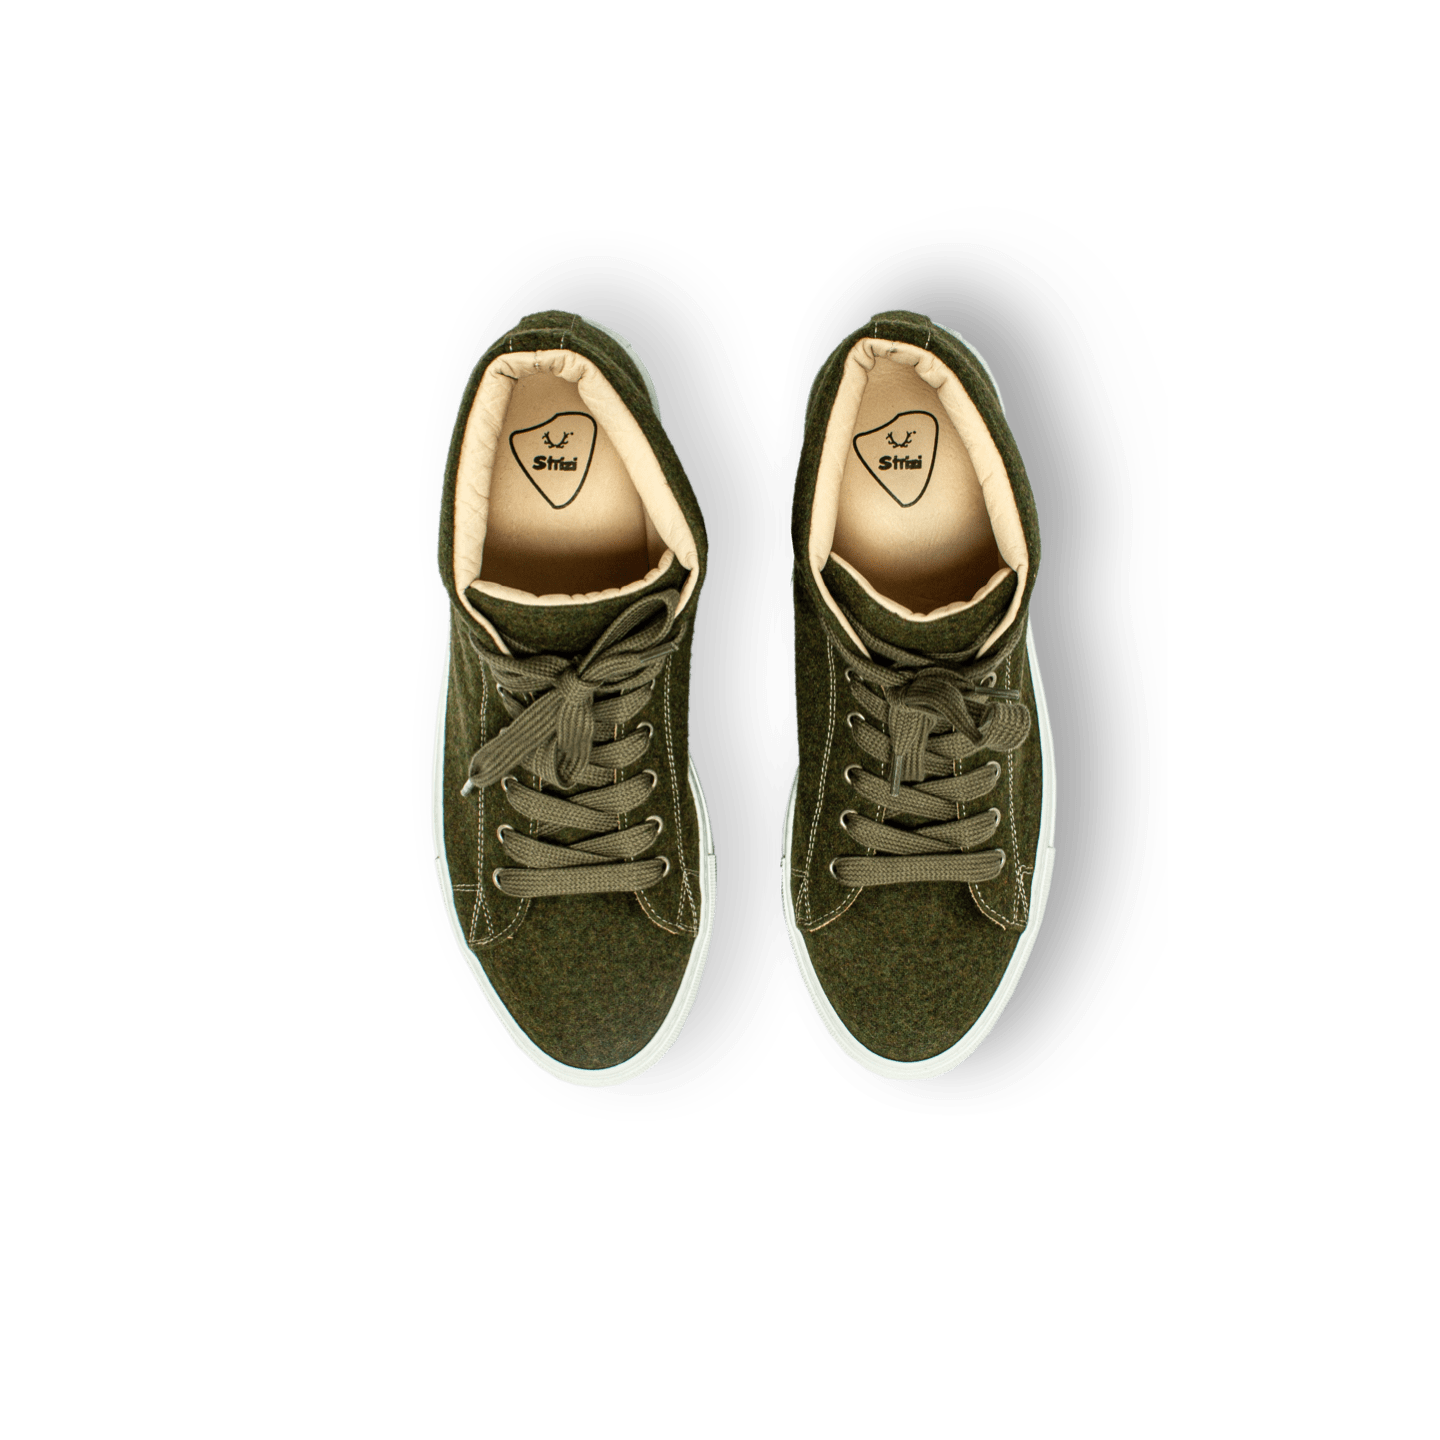 Strizi Schuhe Sneaker grün midcut 4 Strizi